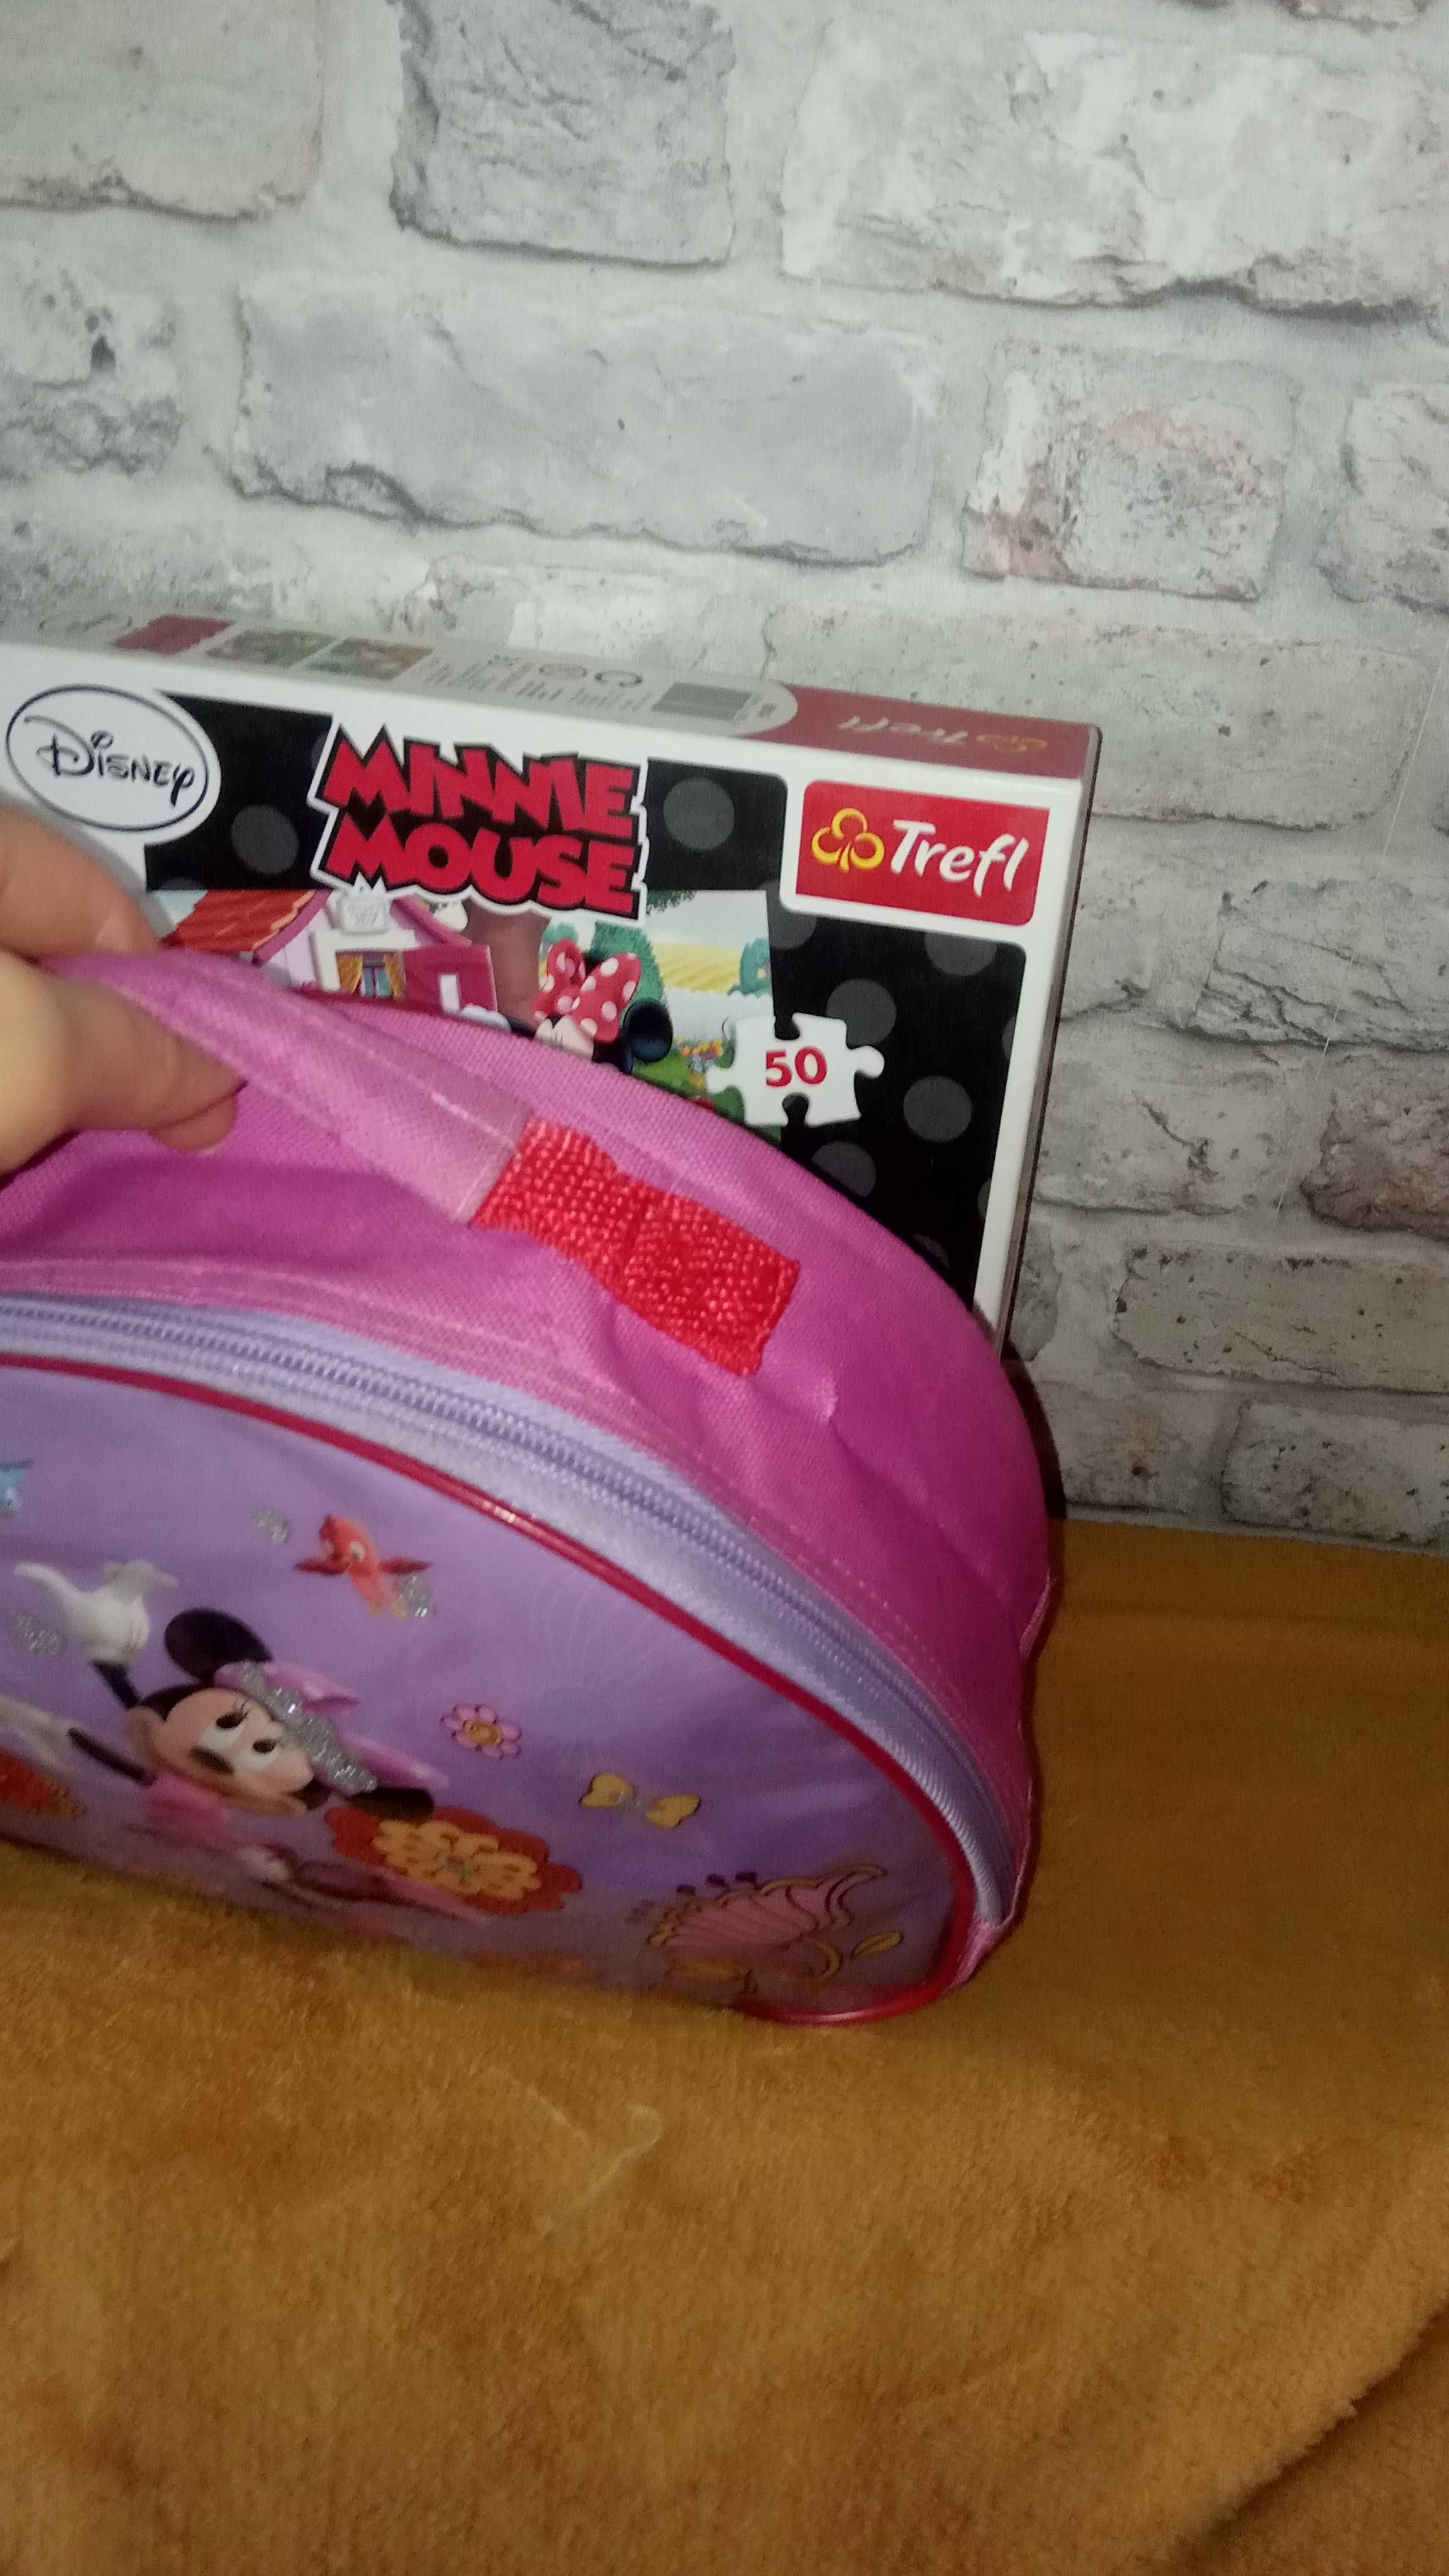 Disney nowa torebka śniadaniowka i 2 ukladanki dużych puzzli